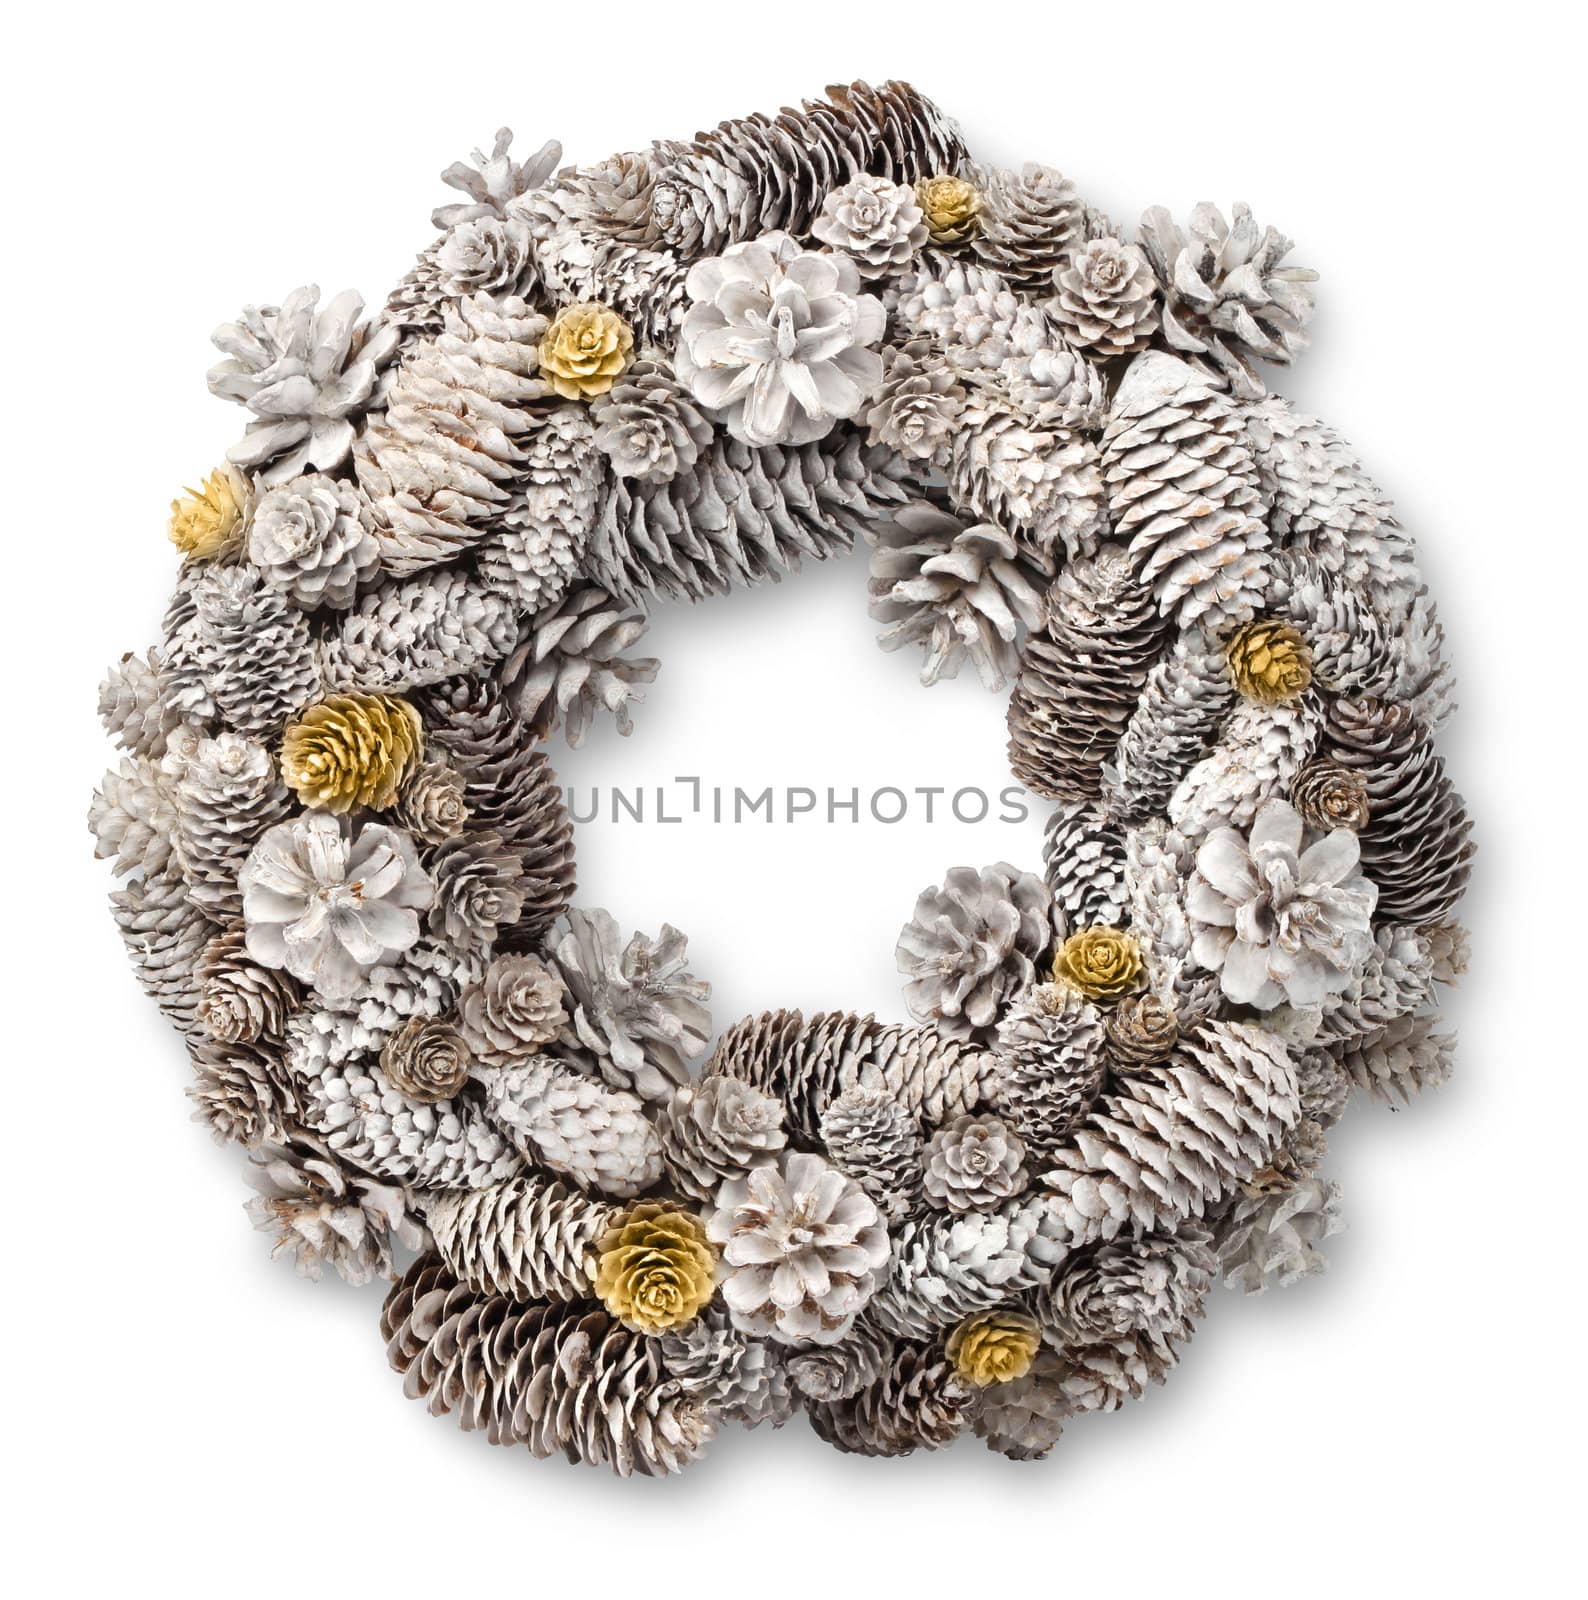 White Christmas door wreath by anterovium